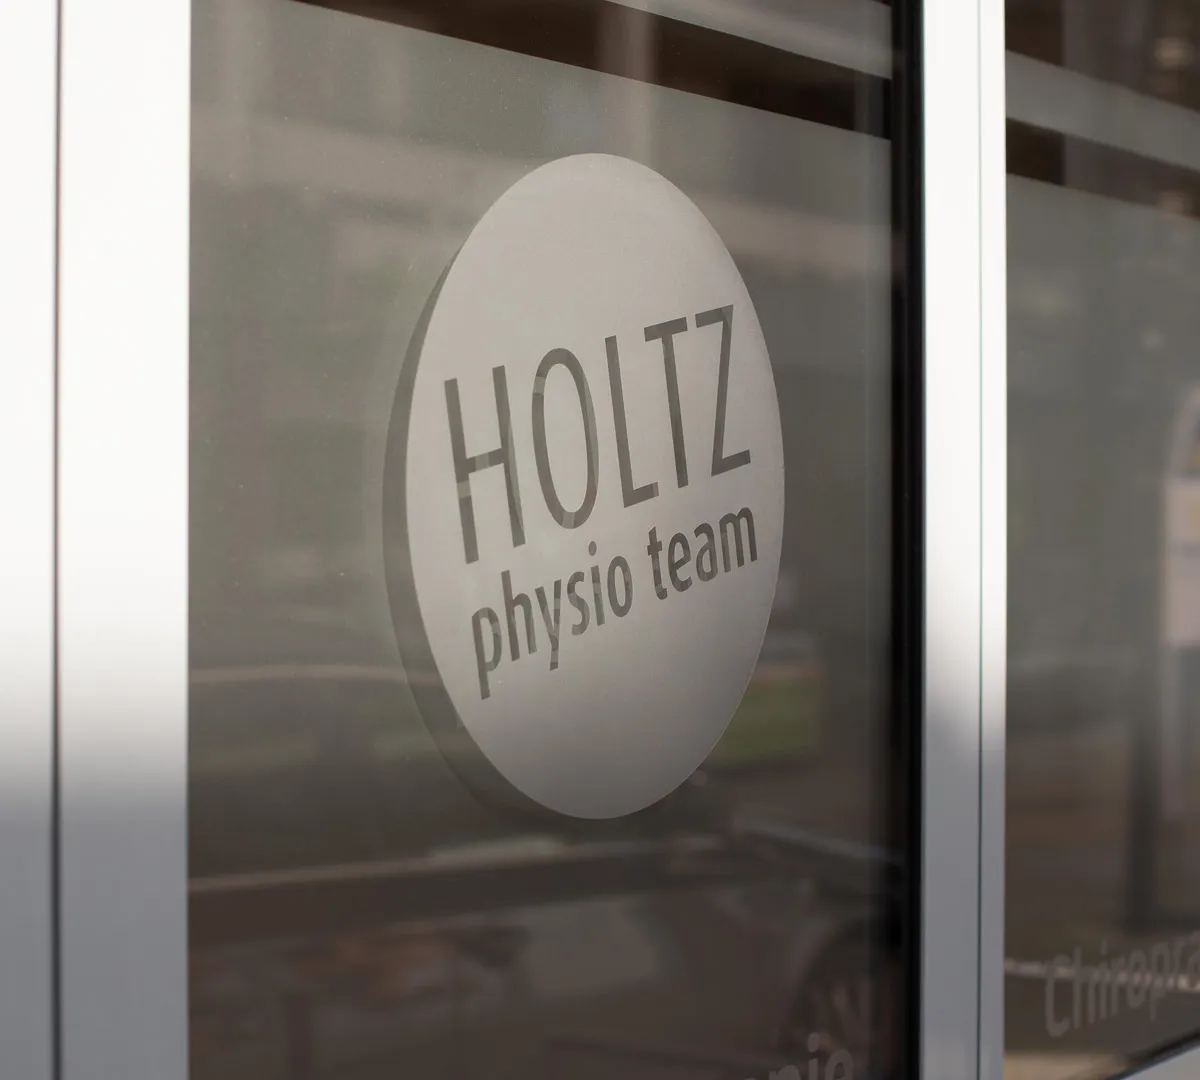 HOLTZ physio team - Stellenangebote in Ahlen und Sendenhorst